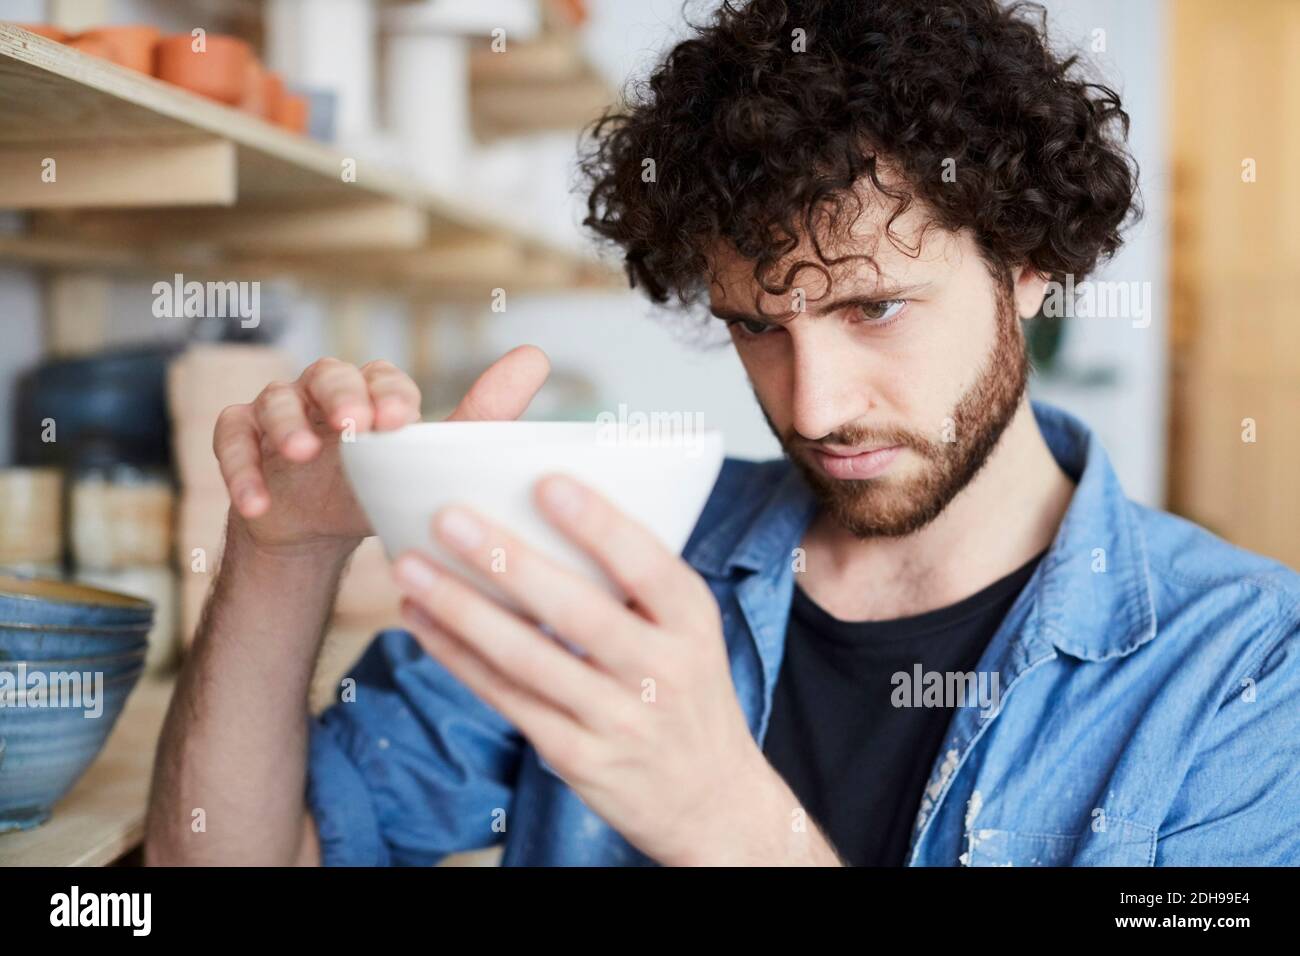 Man examining bowl in pottery class Stock Photo